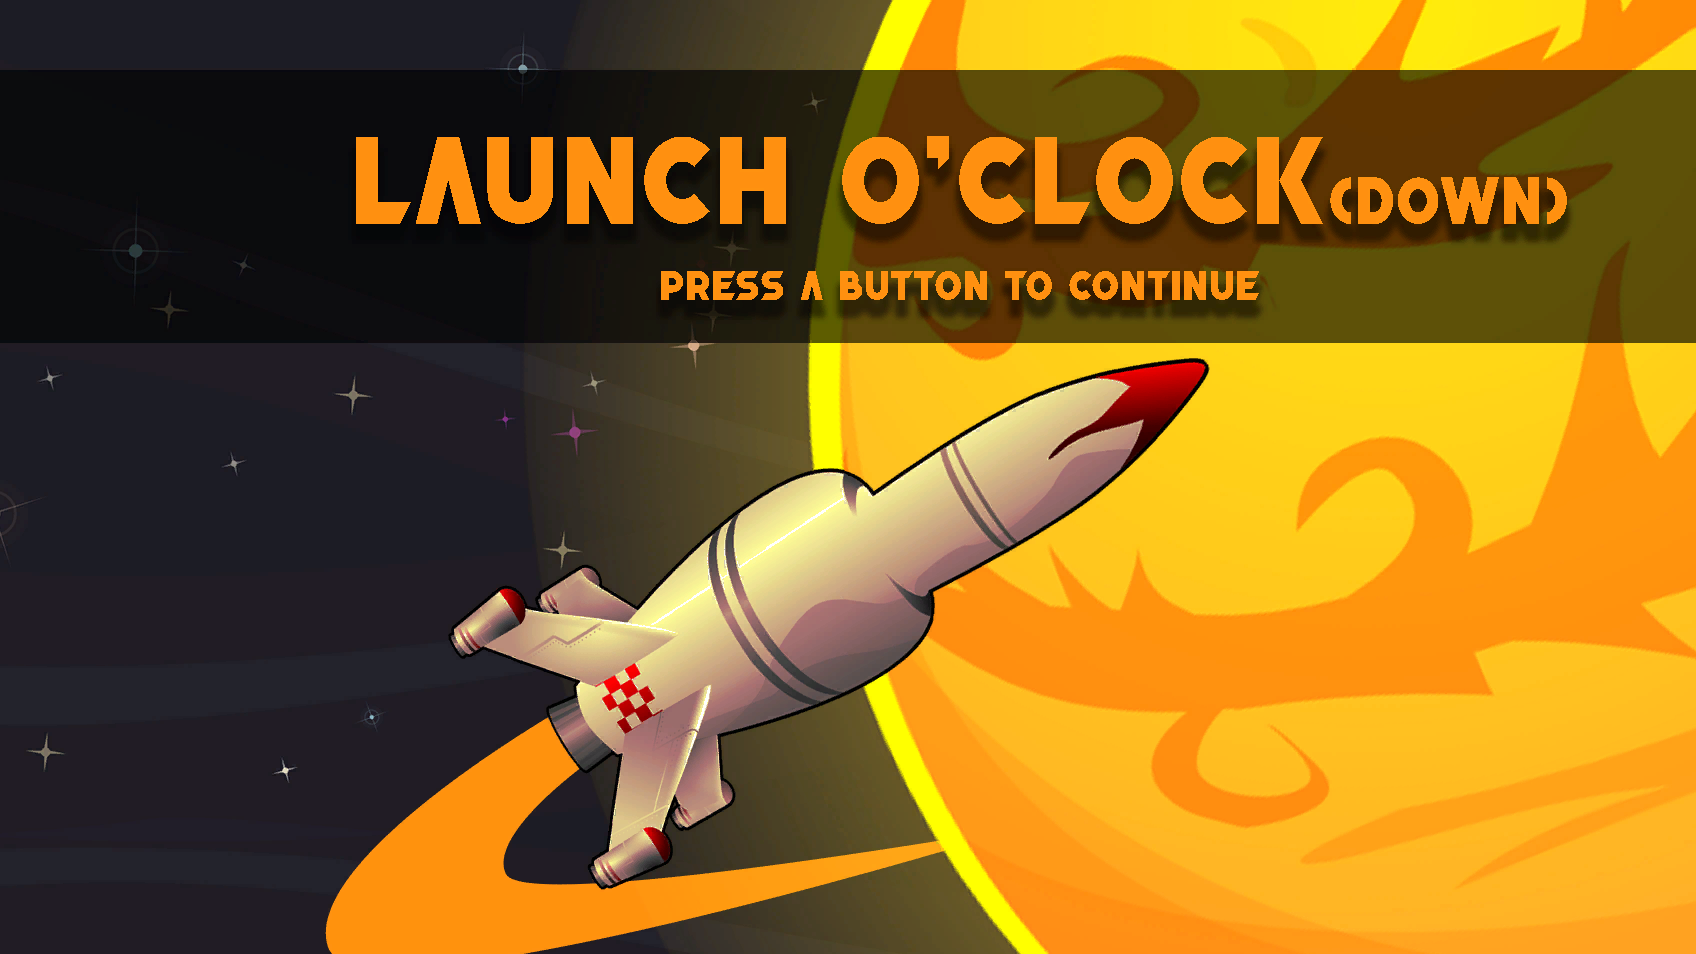 Launch O'Clock(down)